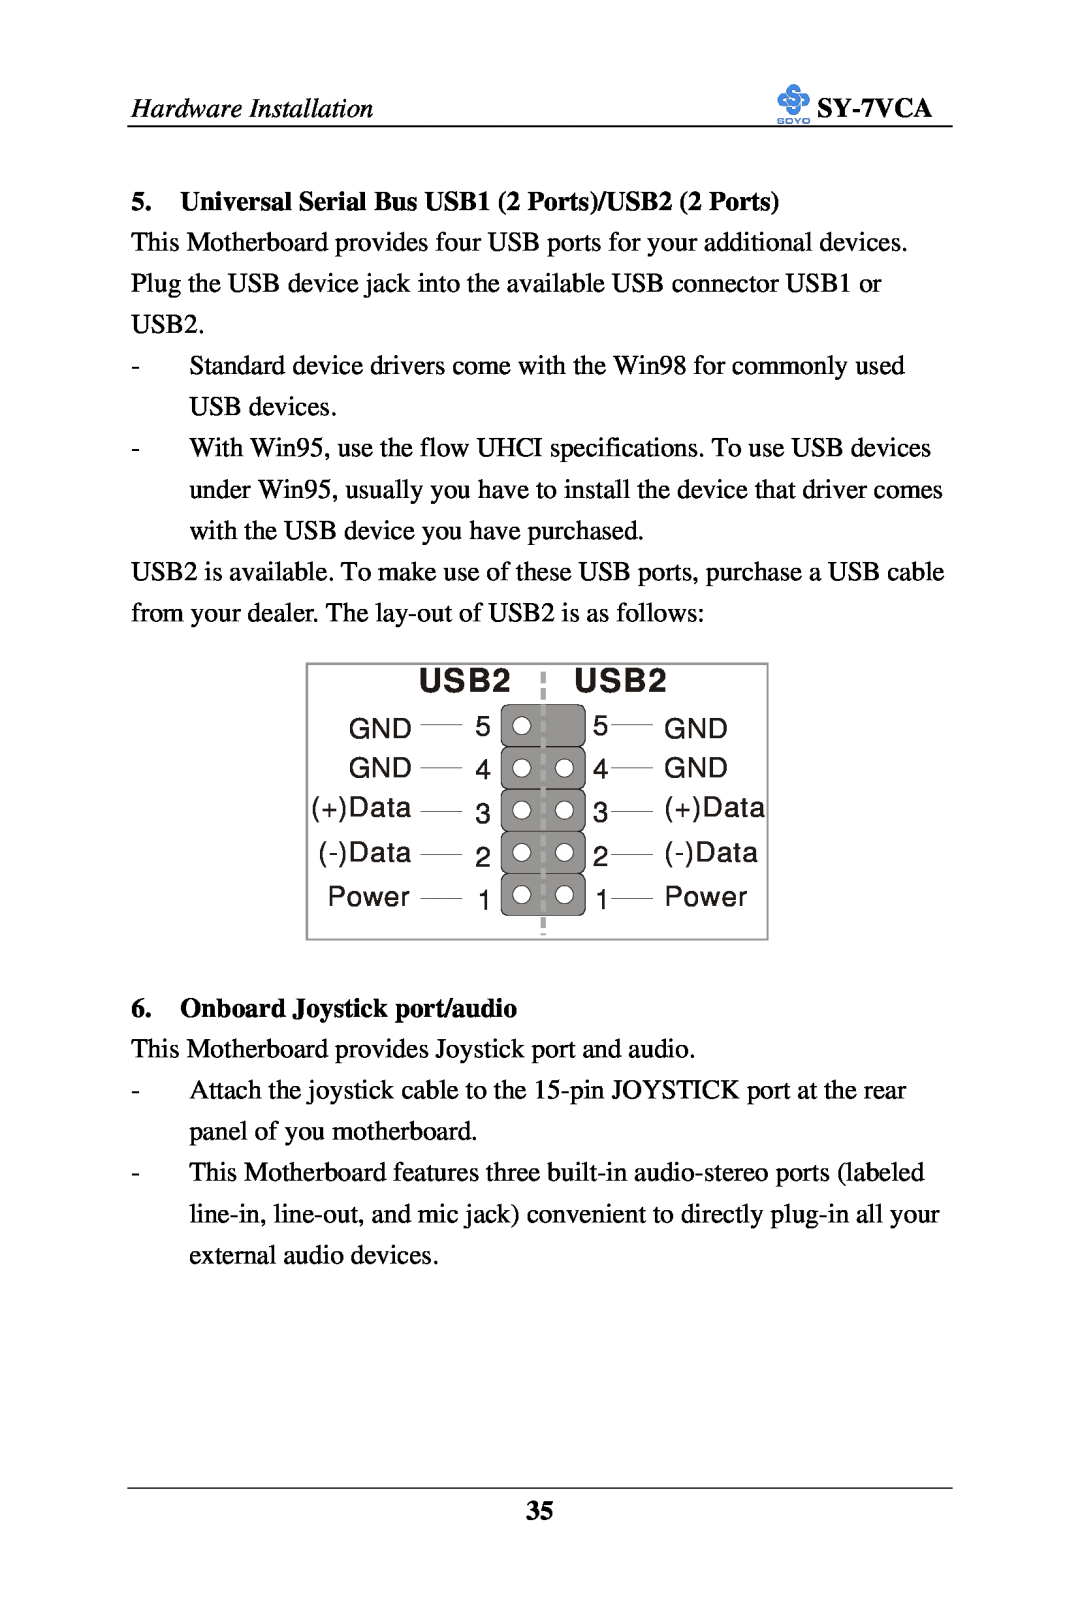 SOYO SY-7VCA user manual USB2, +Data, Power 